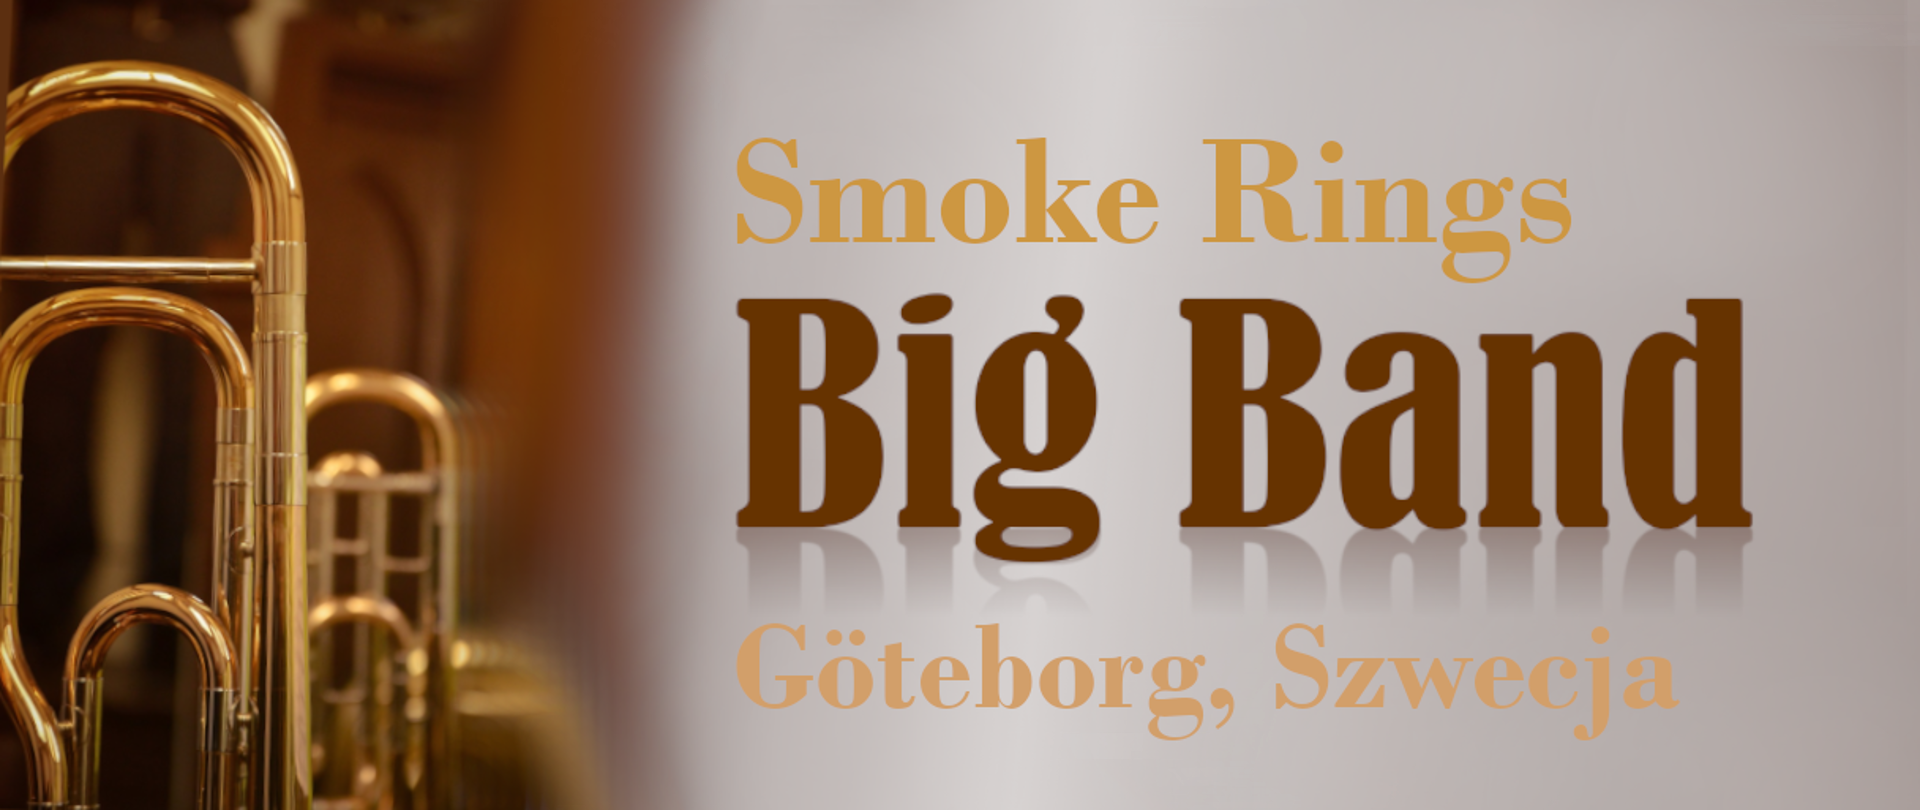 Na kolorowym tle zdjęcie instrumentów dętych oraz napis Smoke Rings Big Band Goteborg Szwecja